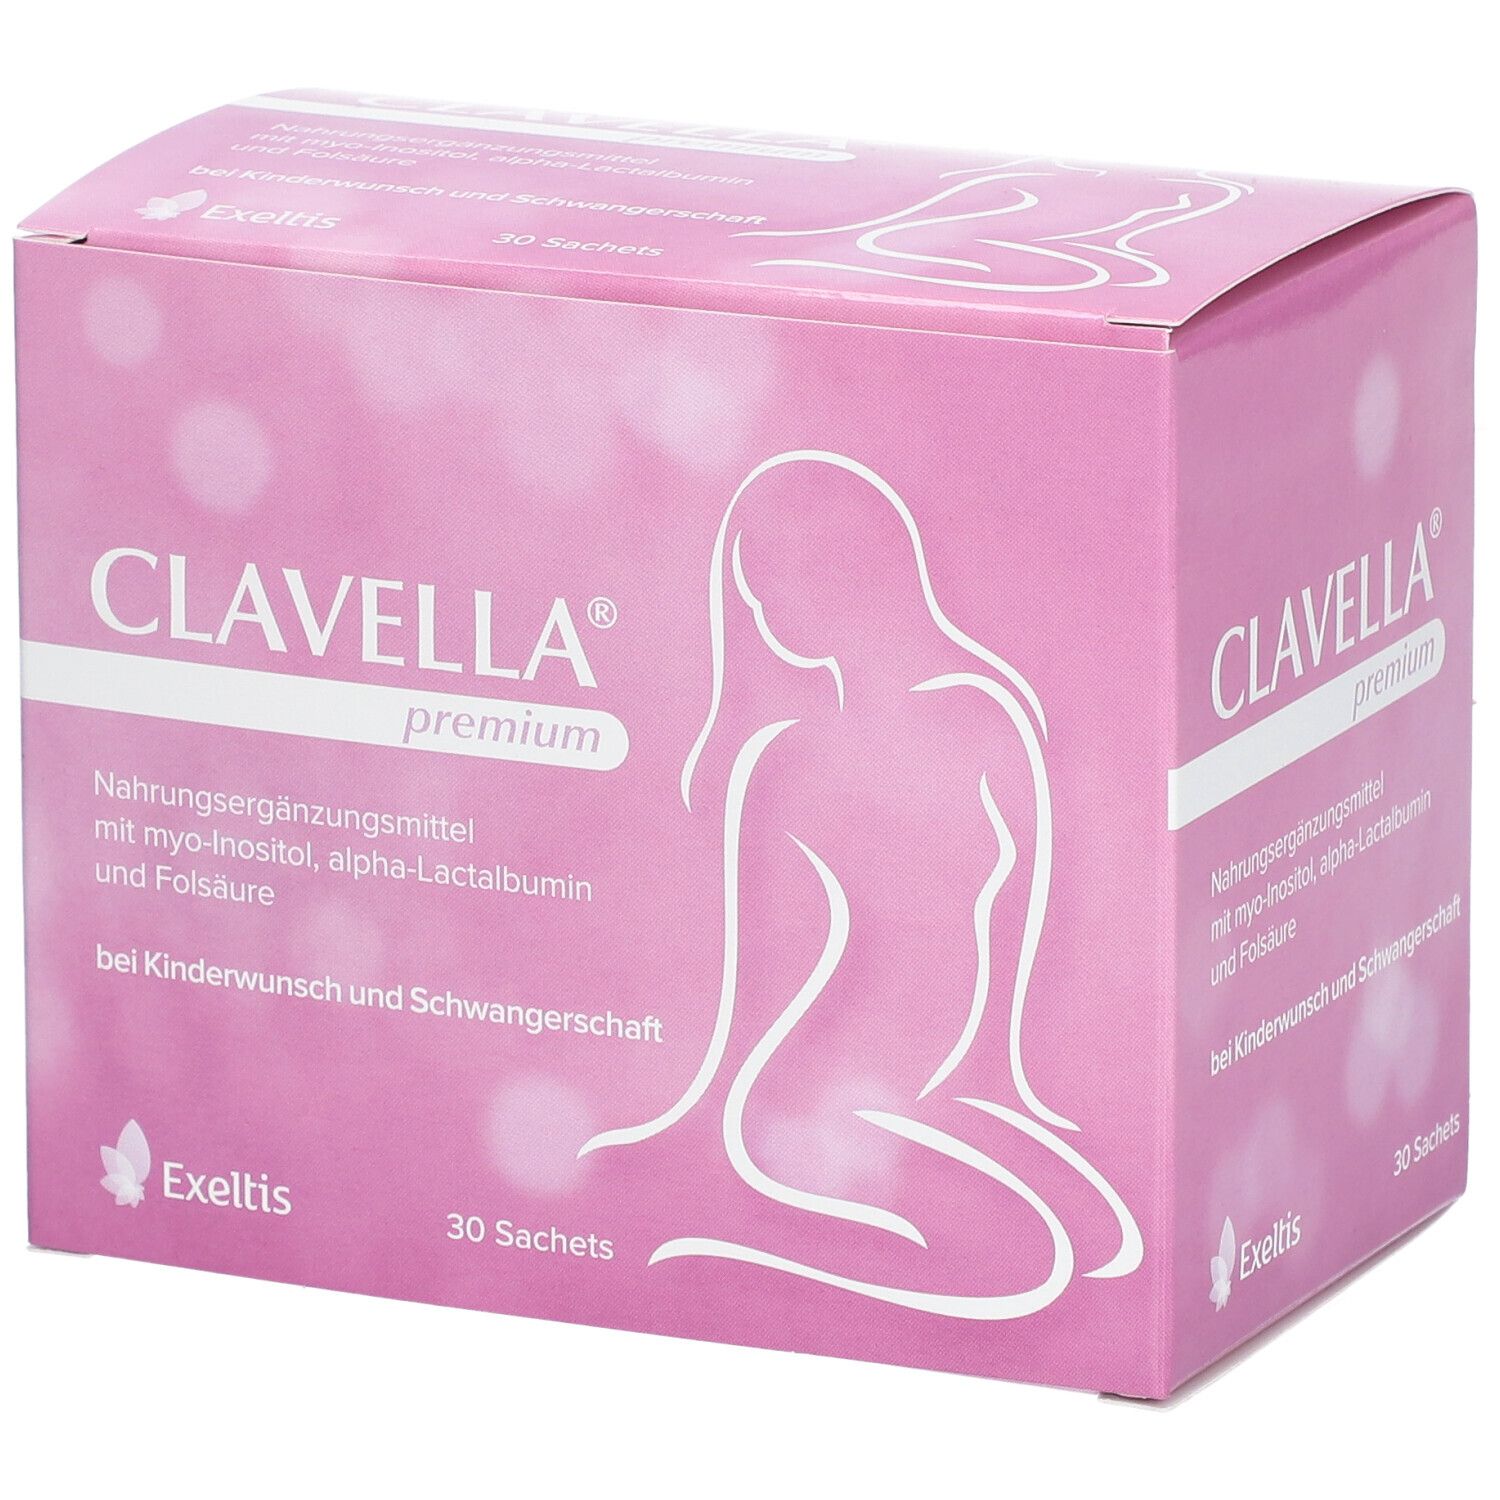 Clavella® premium